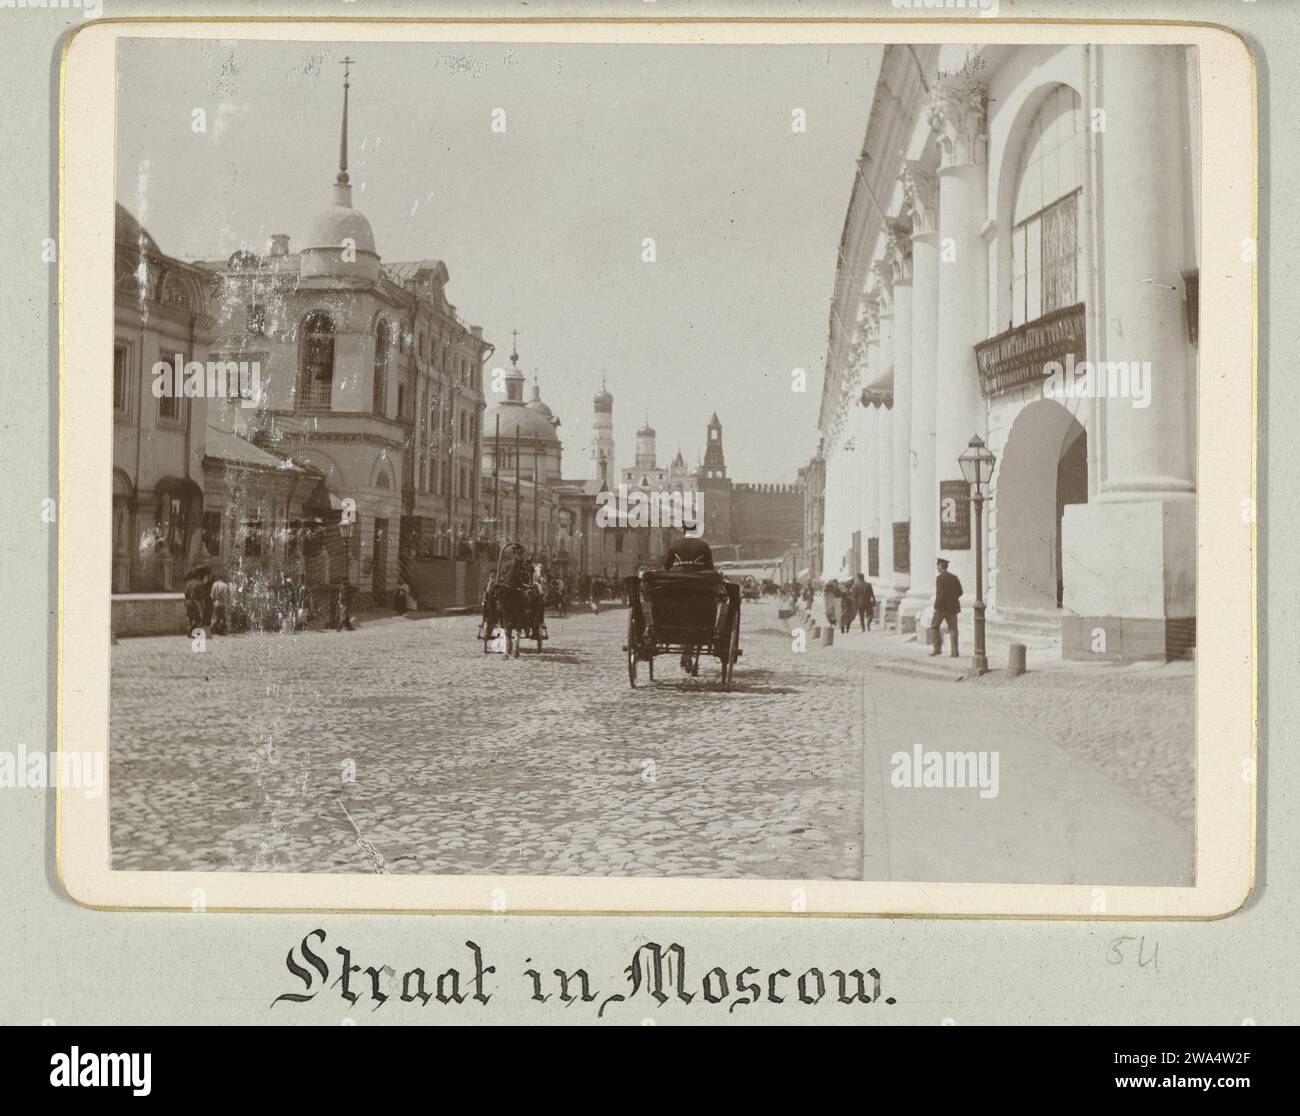 Straßenbild in Moskau, 1898 Photographien. Albumendruck mit Fotounterstützung Stockfoto